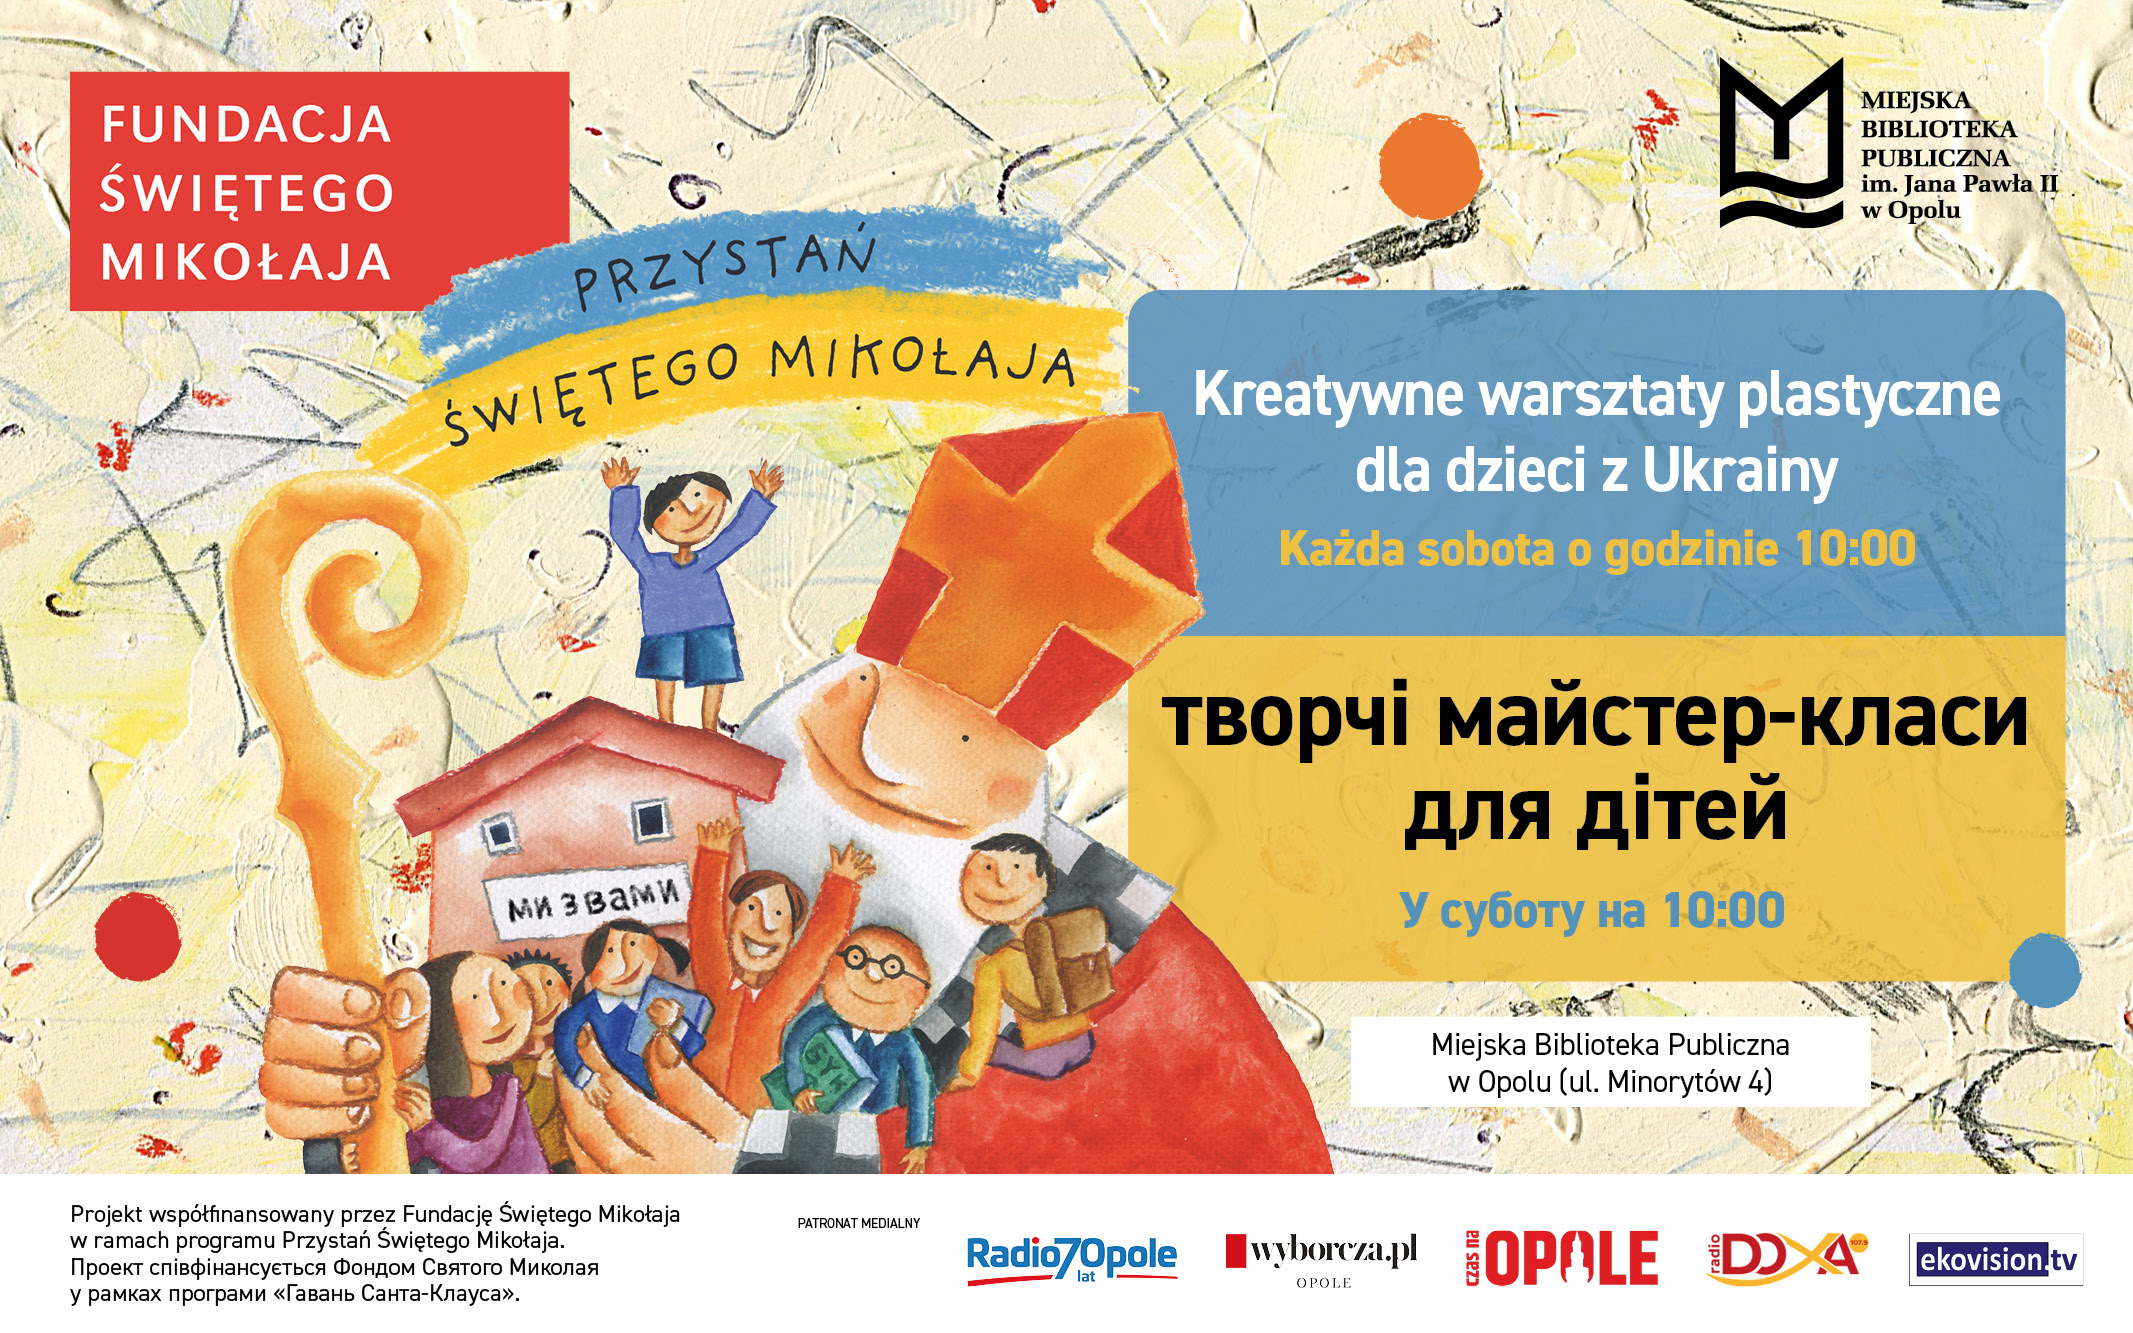 творчі майстер-класи для дітей / Kreatywne warsztaty plastyczne dla dzieci z Ukrainy